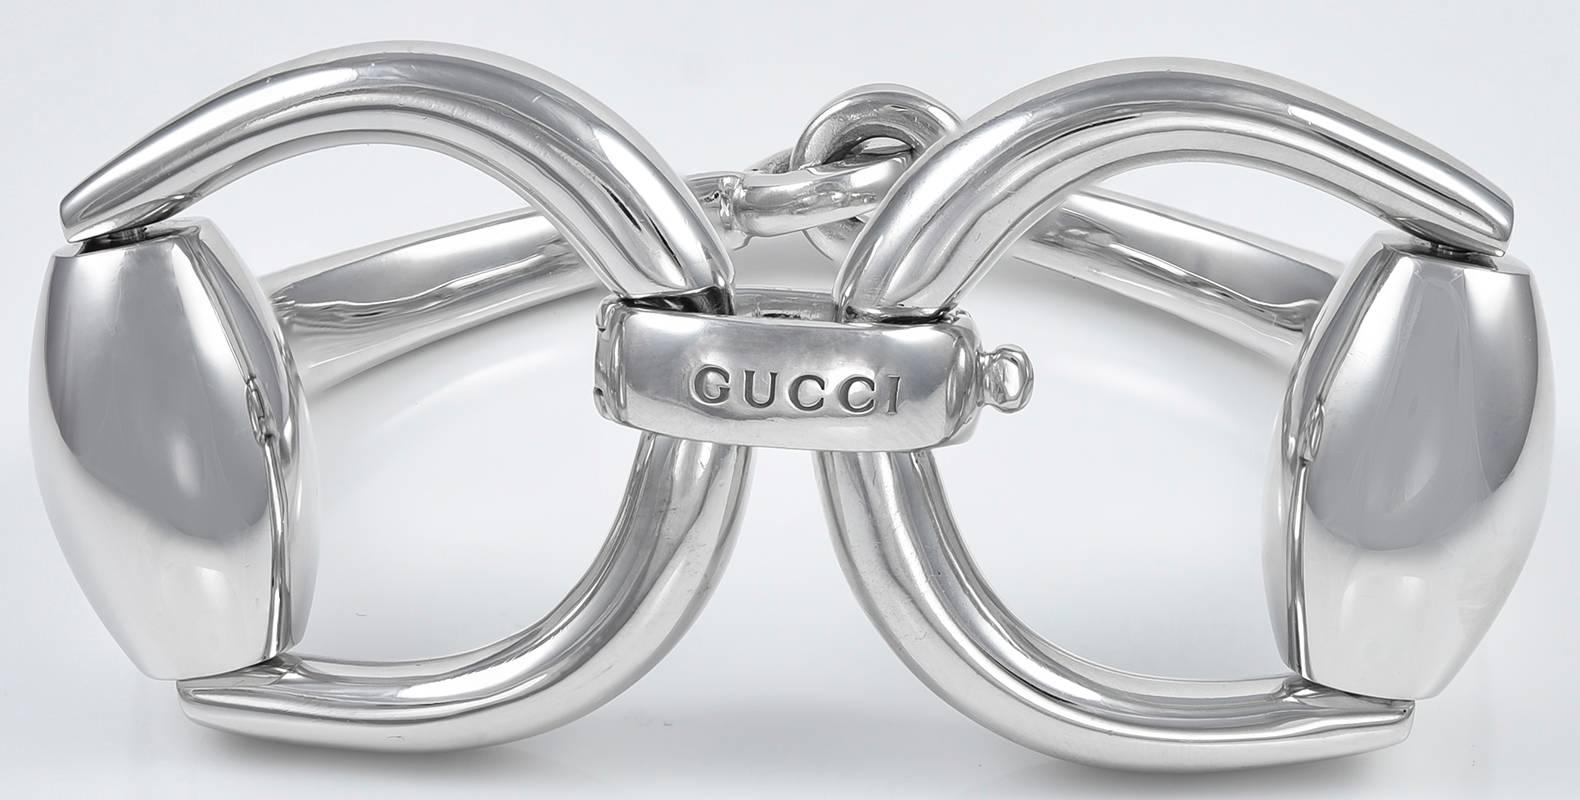 Heavy gauge sterling silver  bracelet in the 